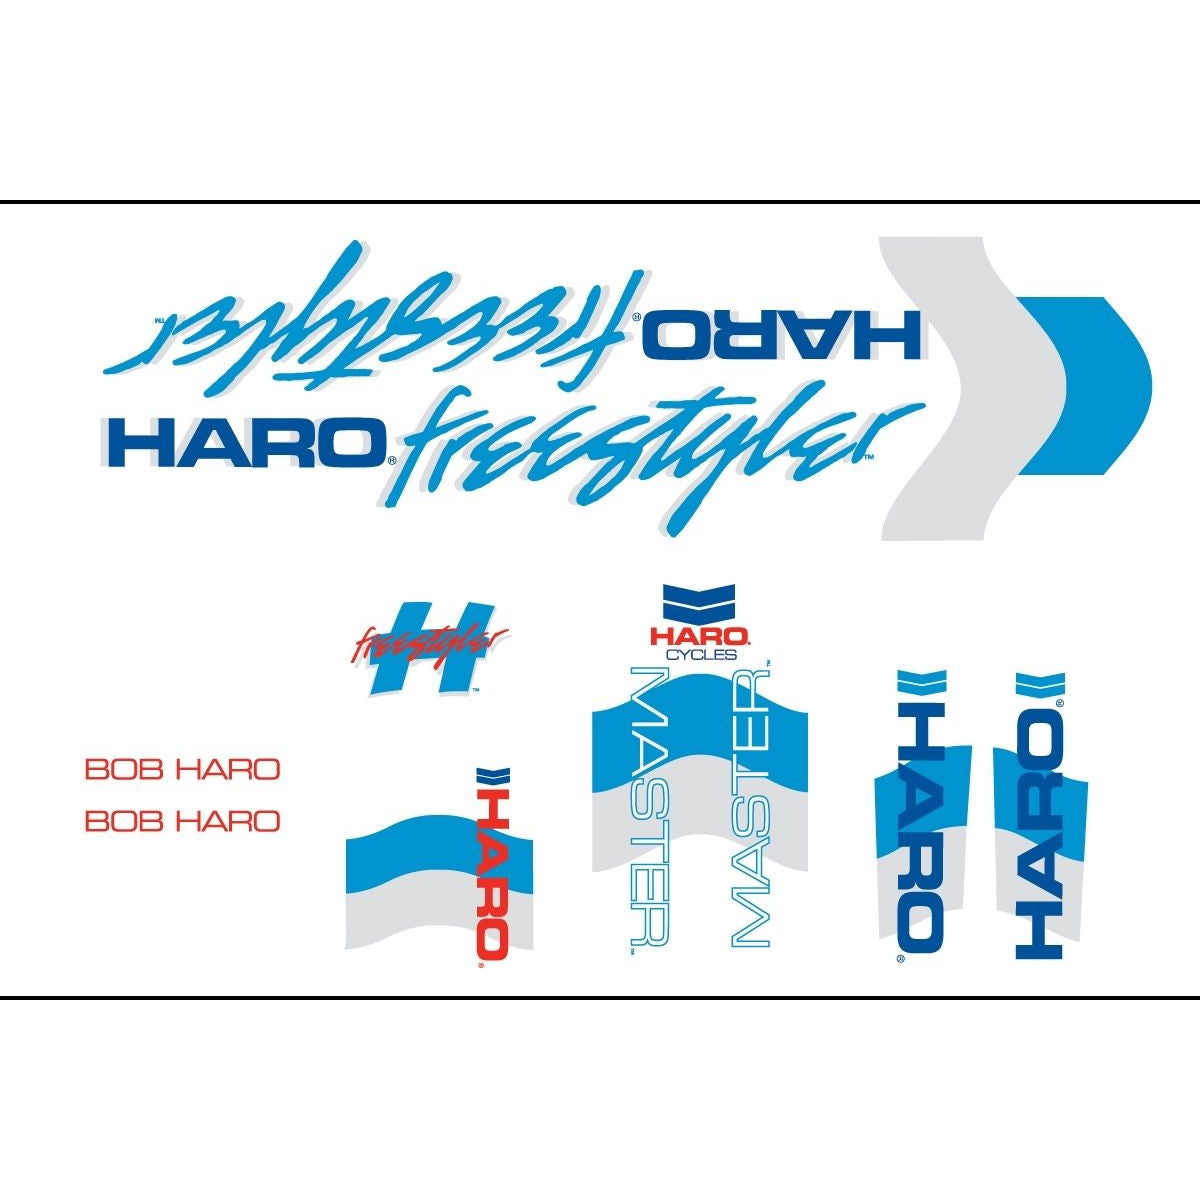 Haro 1985 Master BMX Decal Set for Frame + Fork - White/Blue